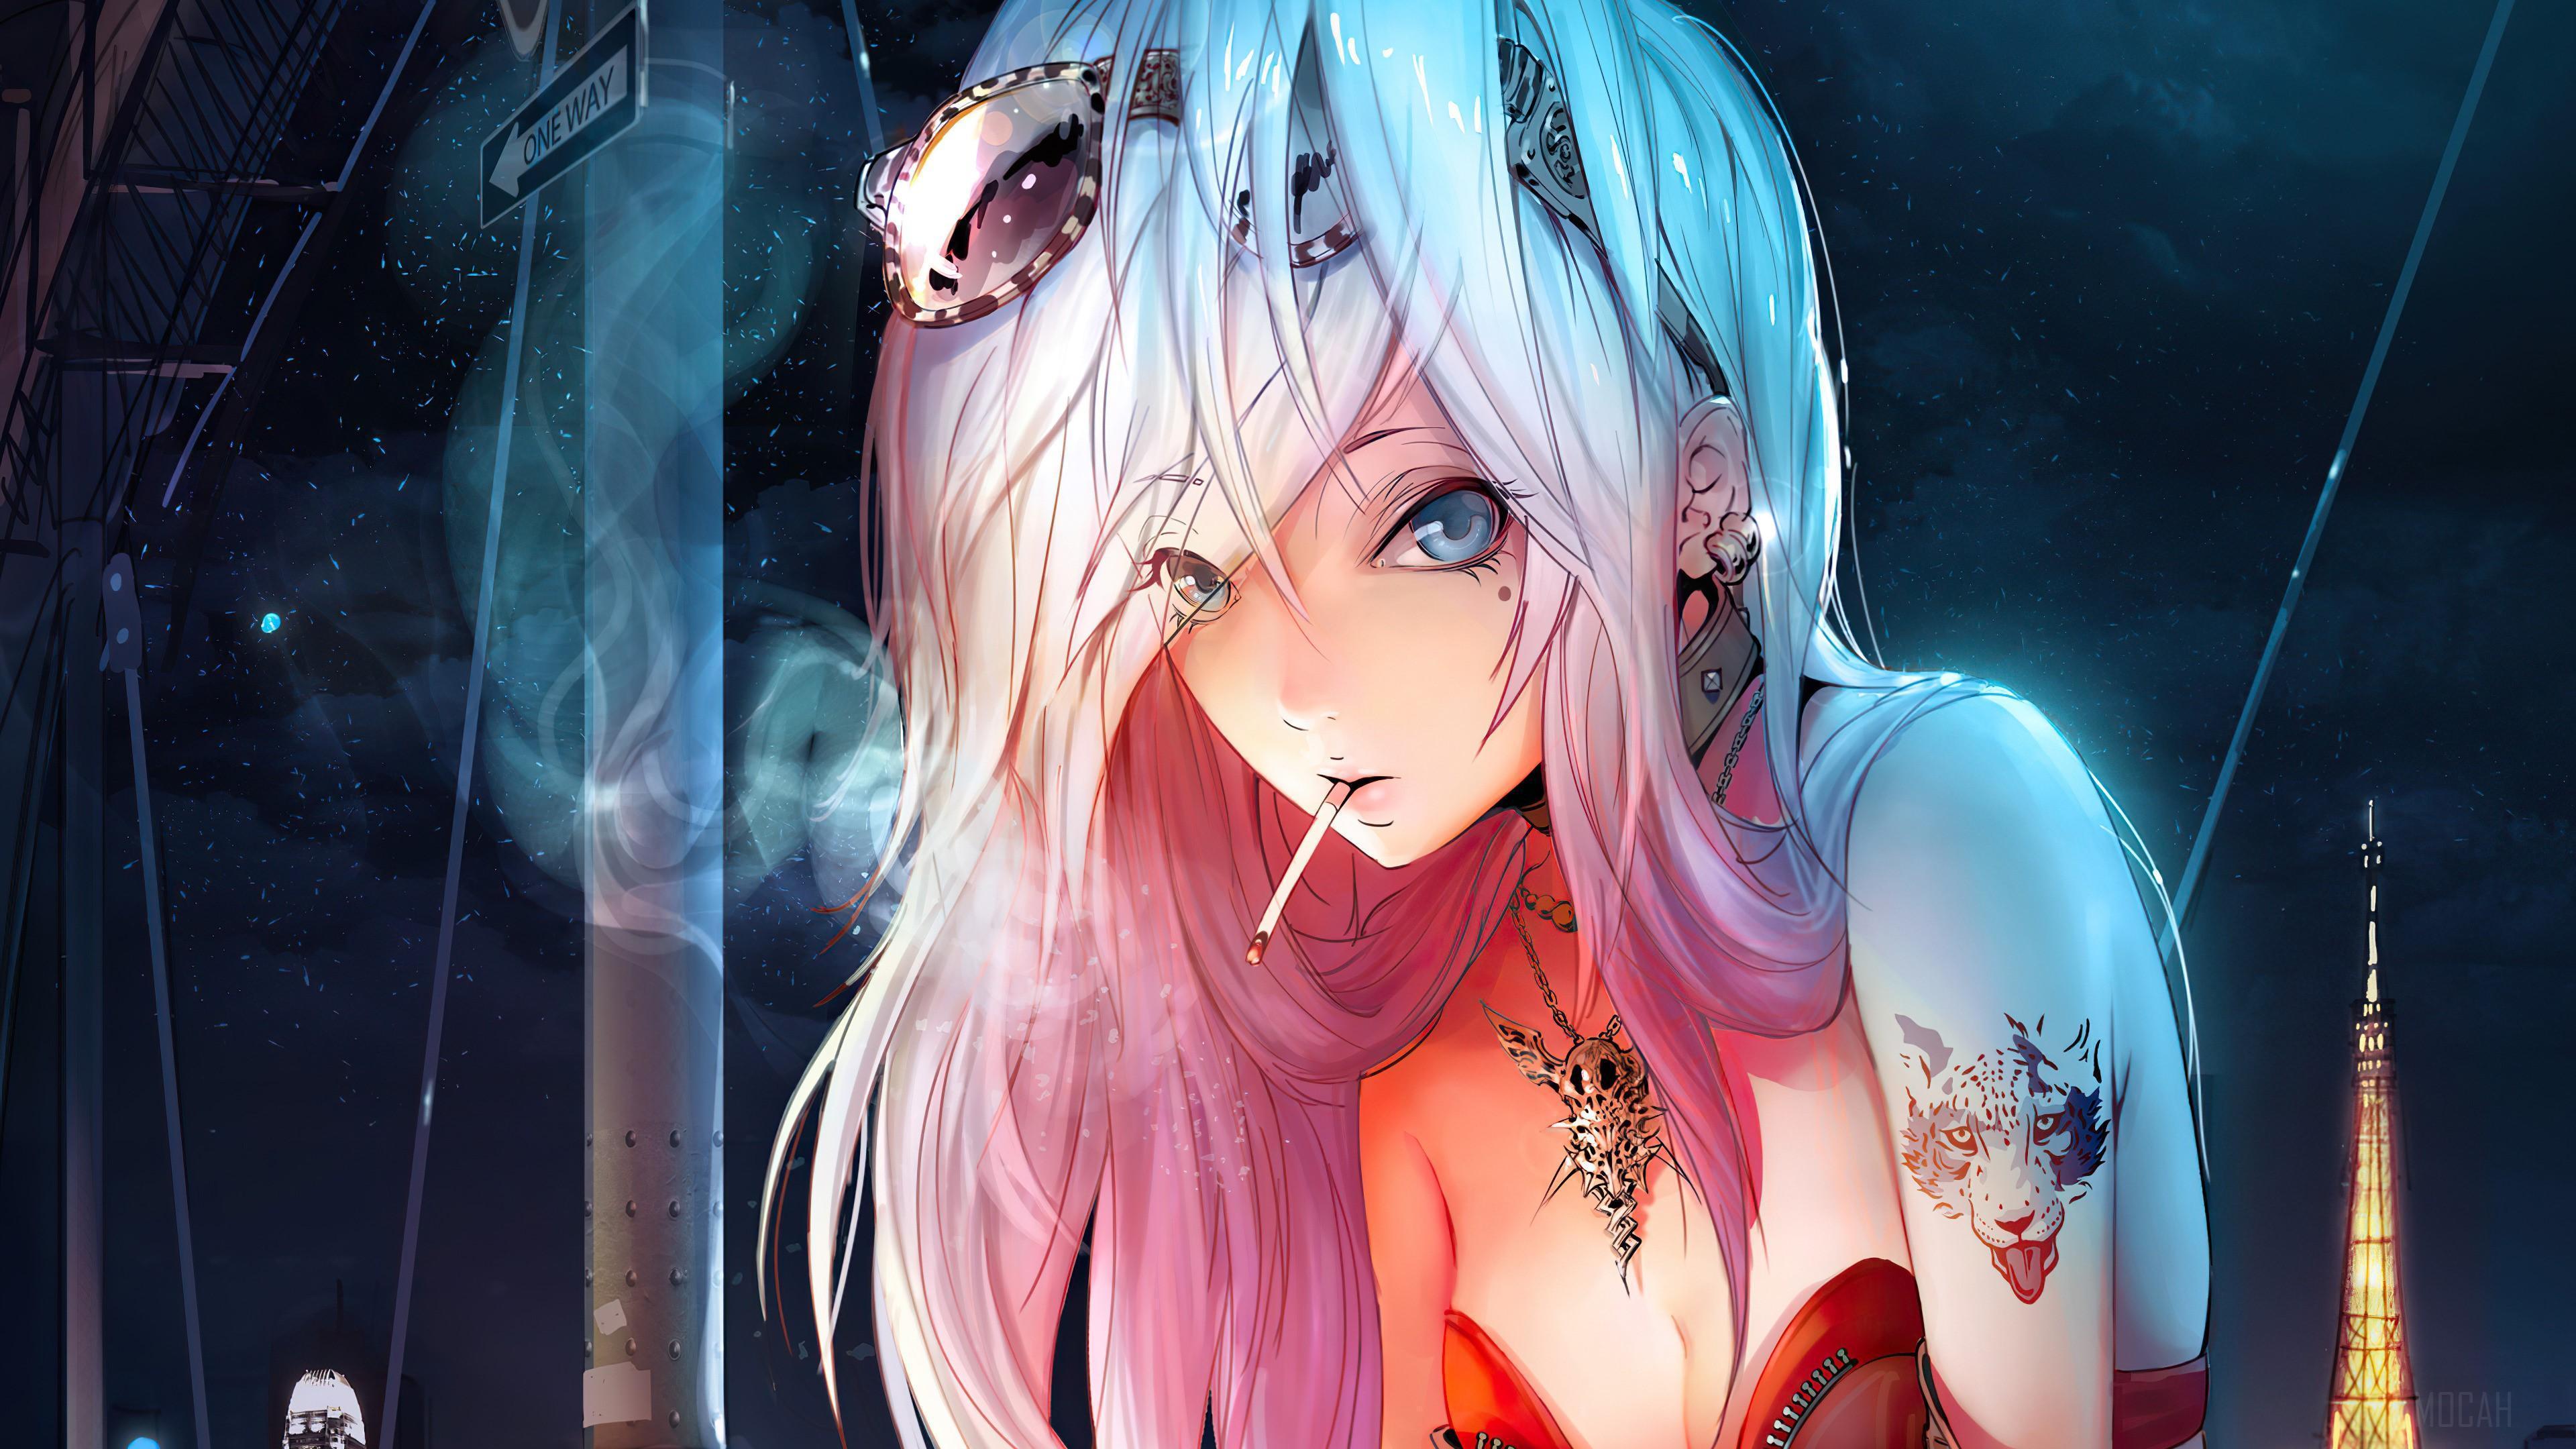 HD wallpaper, Anime Girls, Anime, Smoking 4K